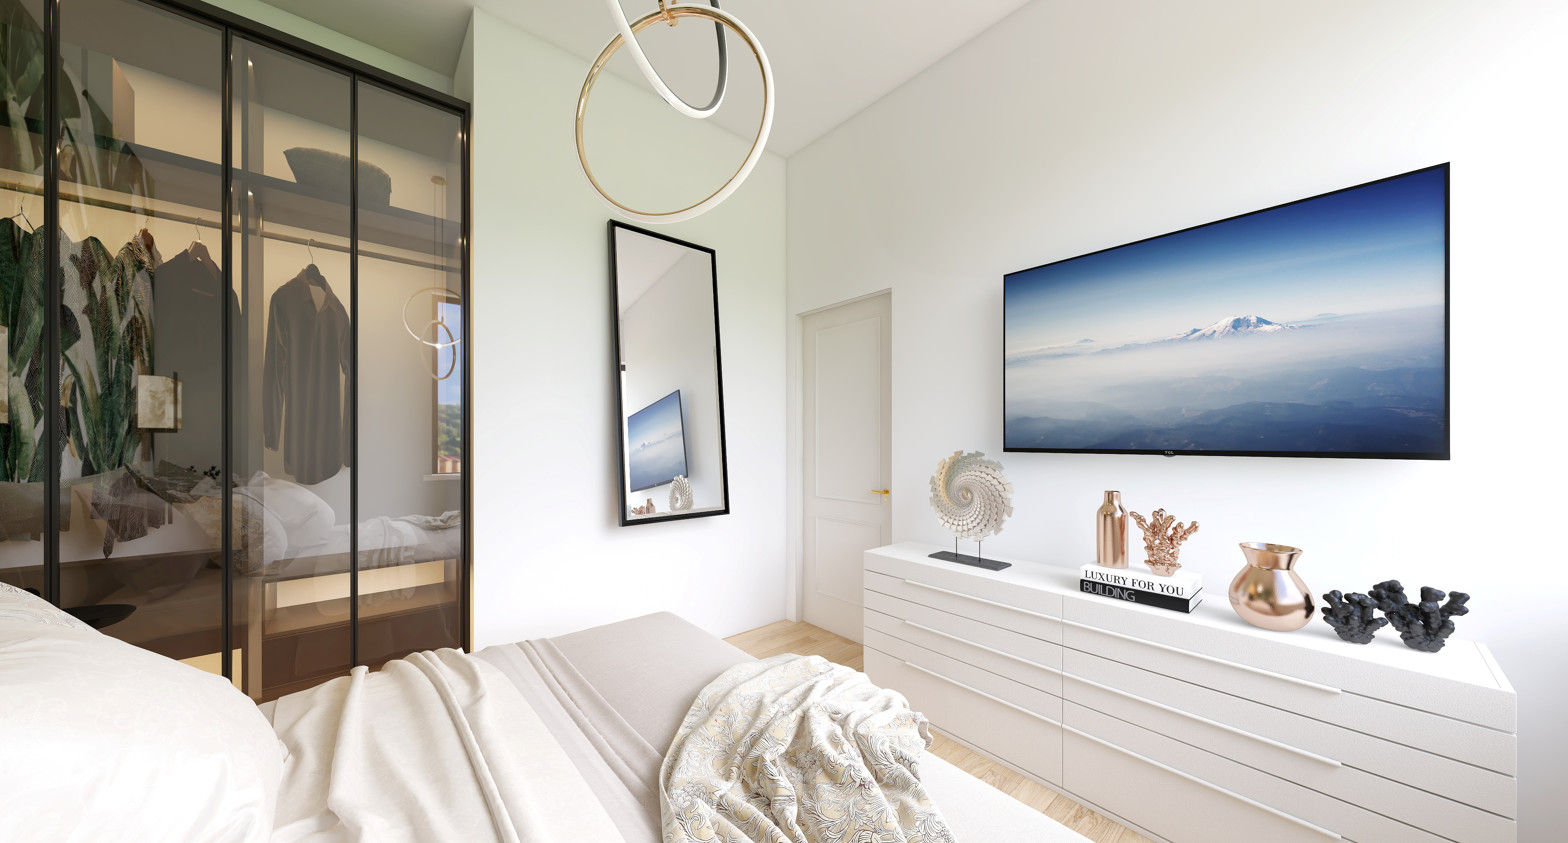 Prospettiva camera da letto L&M design di Cinzia Marelli Camera da letto piccola arredamento moderno,mobili in Brianza ,arredamento a Milano,camera ,canera matrimoniale